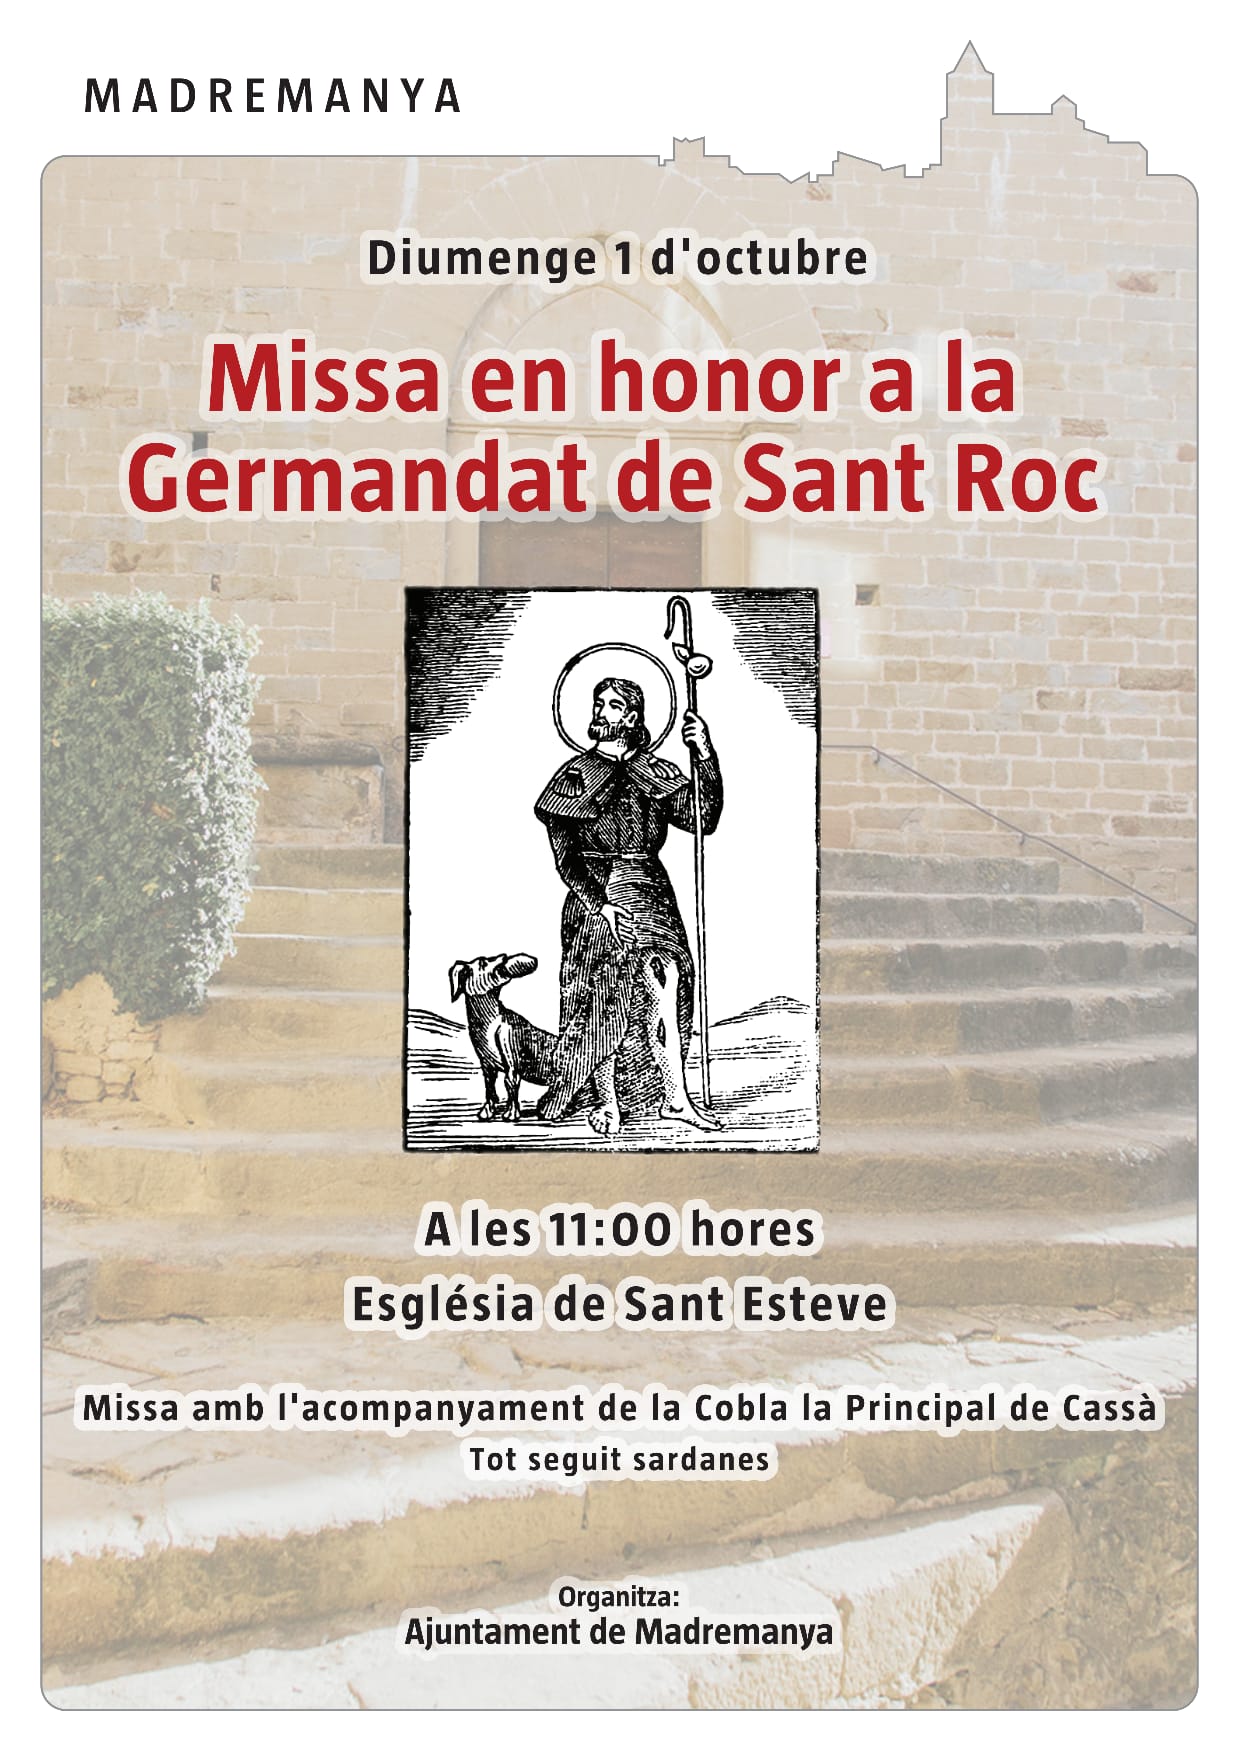 Missa en honor a la Germandat de Sant Roc